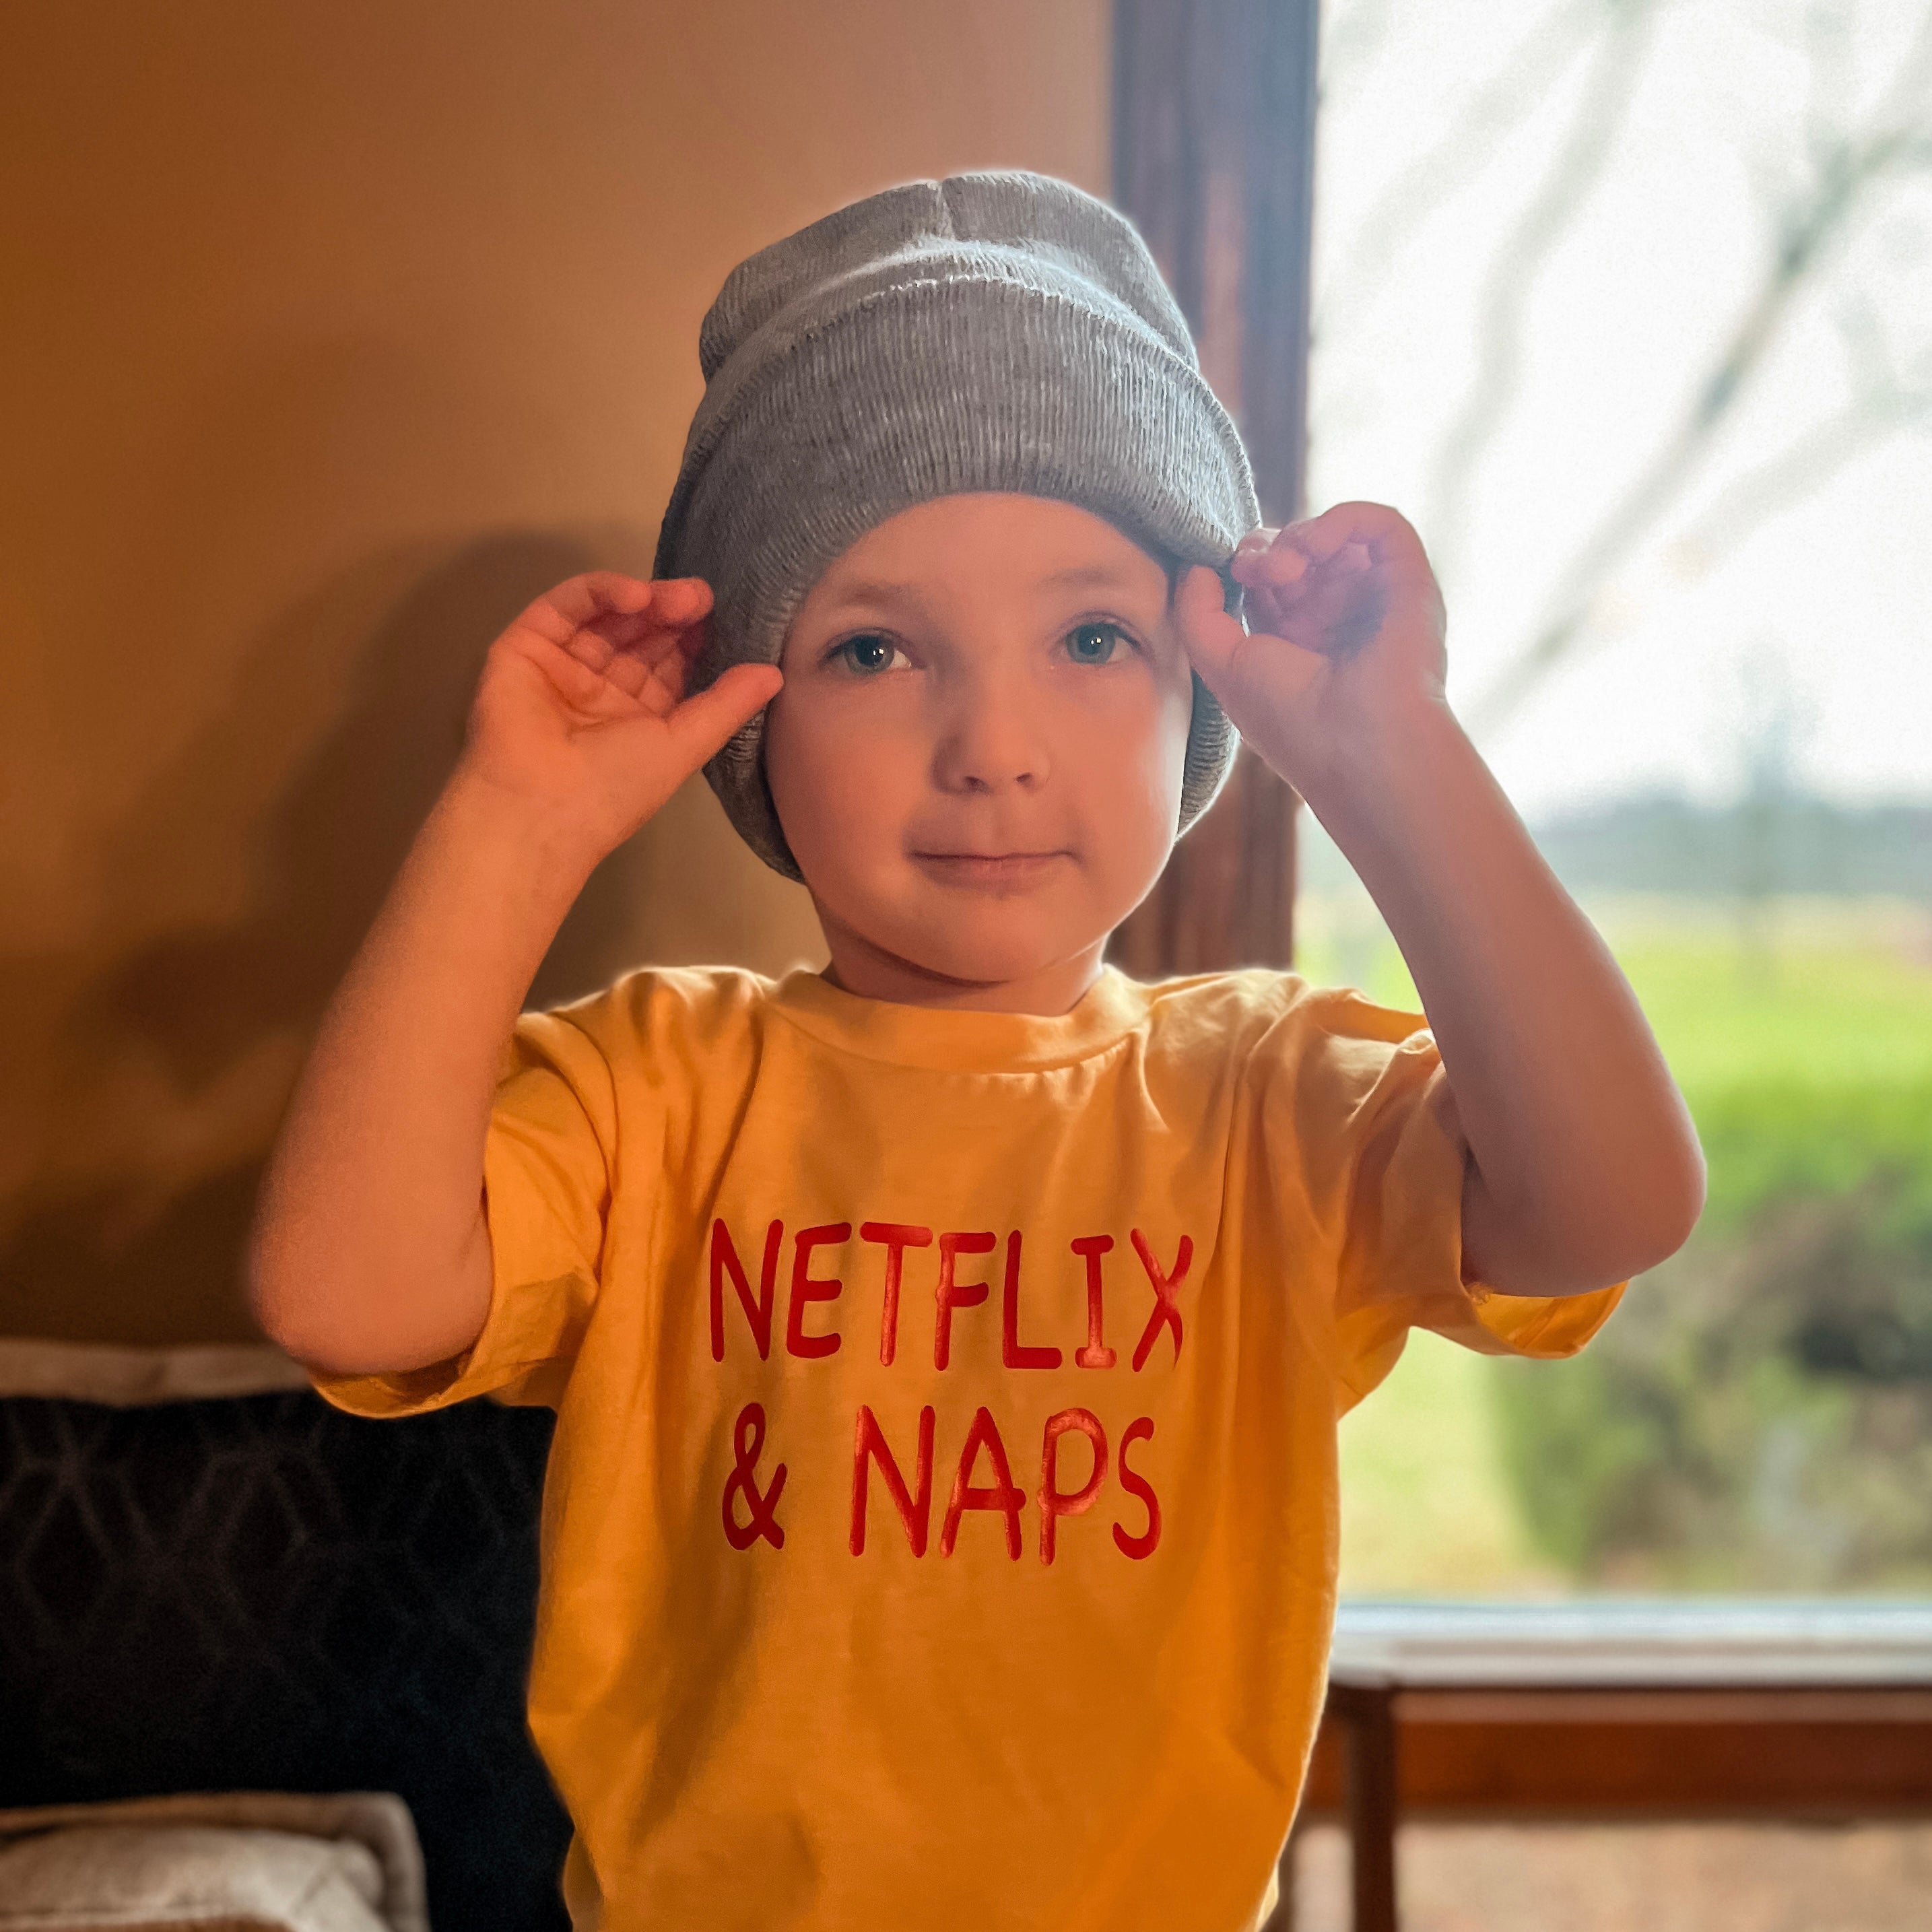 Netflix & Naps Toddler T-shirt